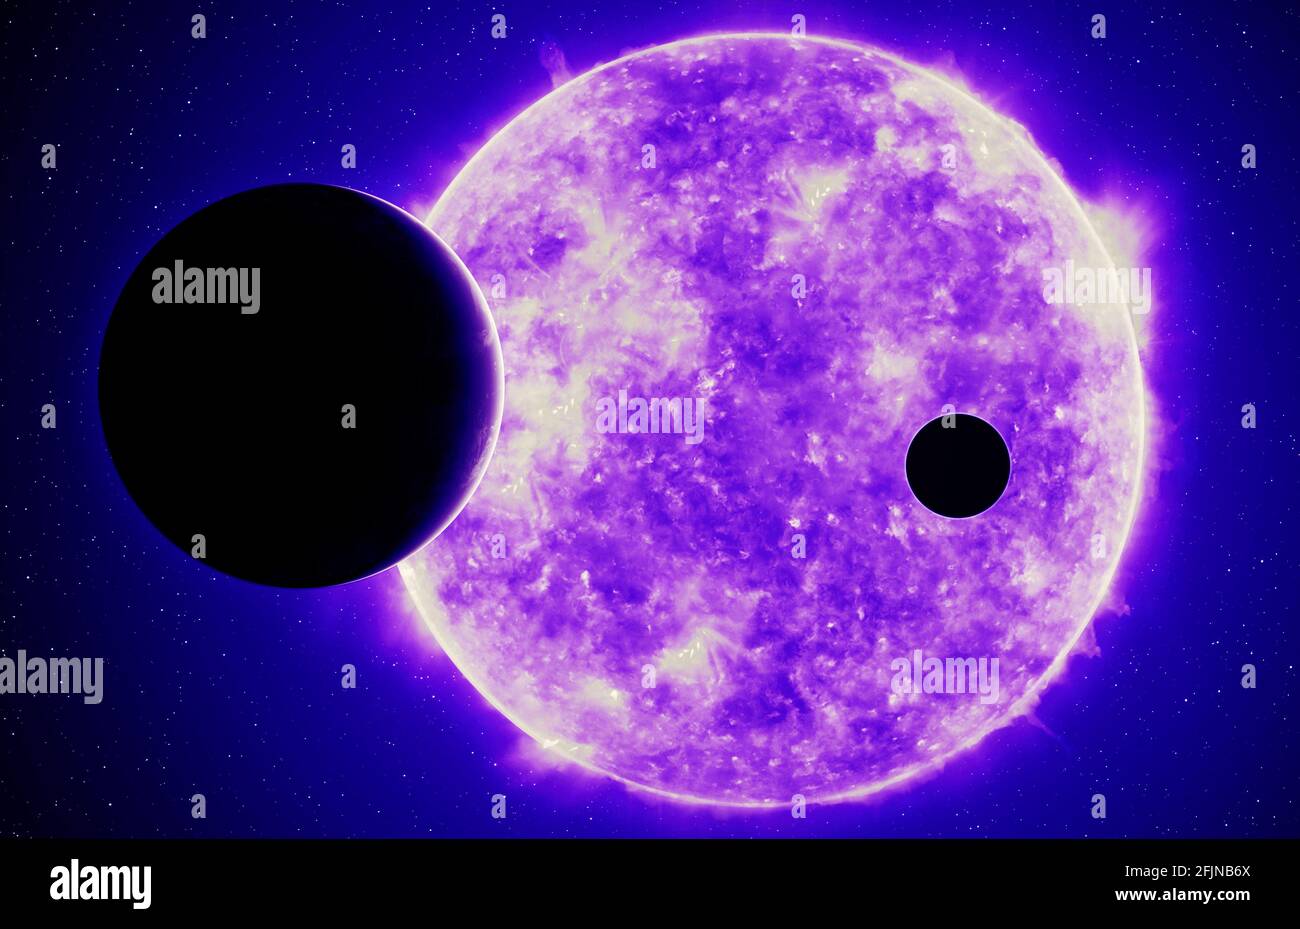 Deux exoplanètes contre l'étoile ultraviolette, éléments de cette image fournis par la NASA Banque D'Images